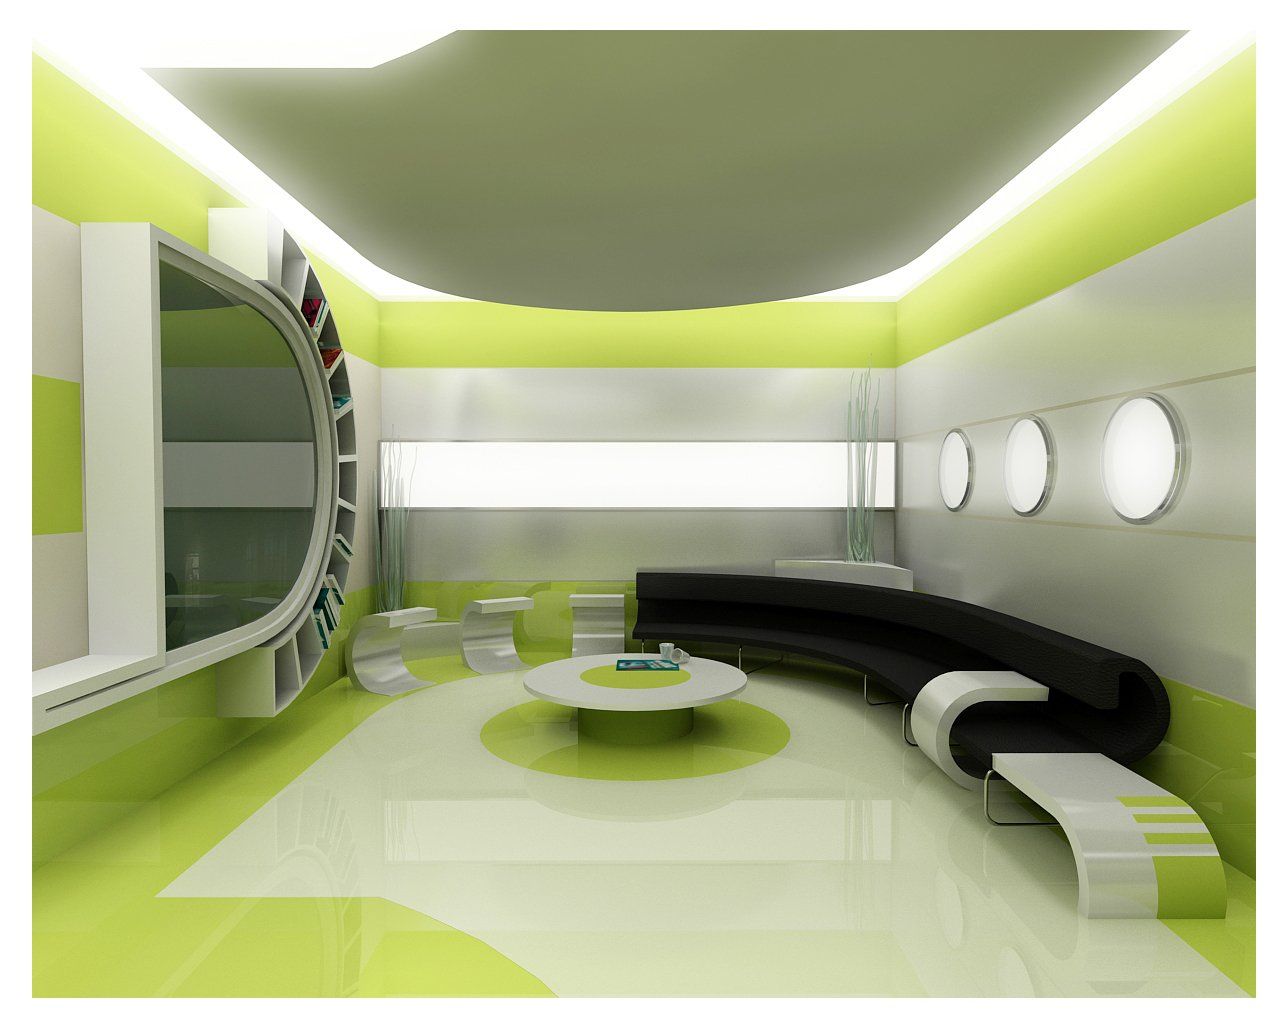 Apartment Studio Interior Design Ideas